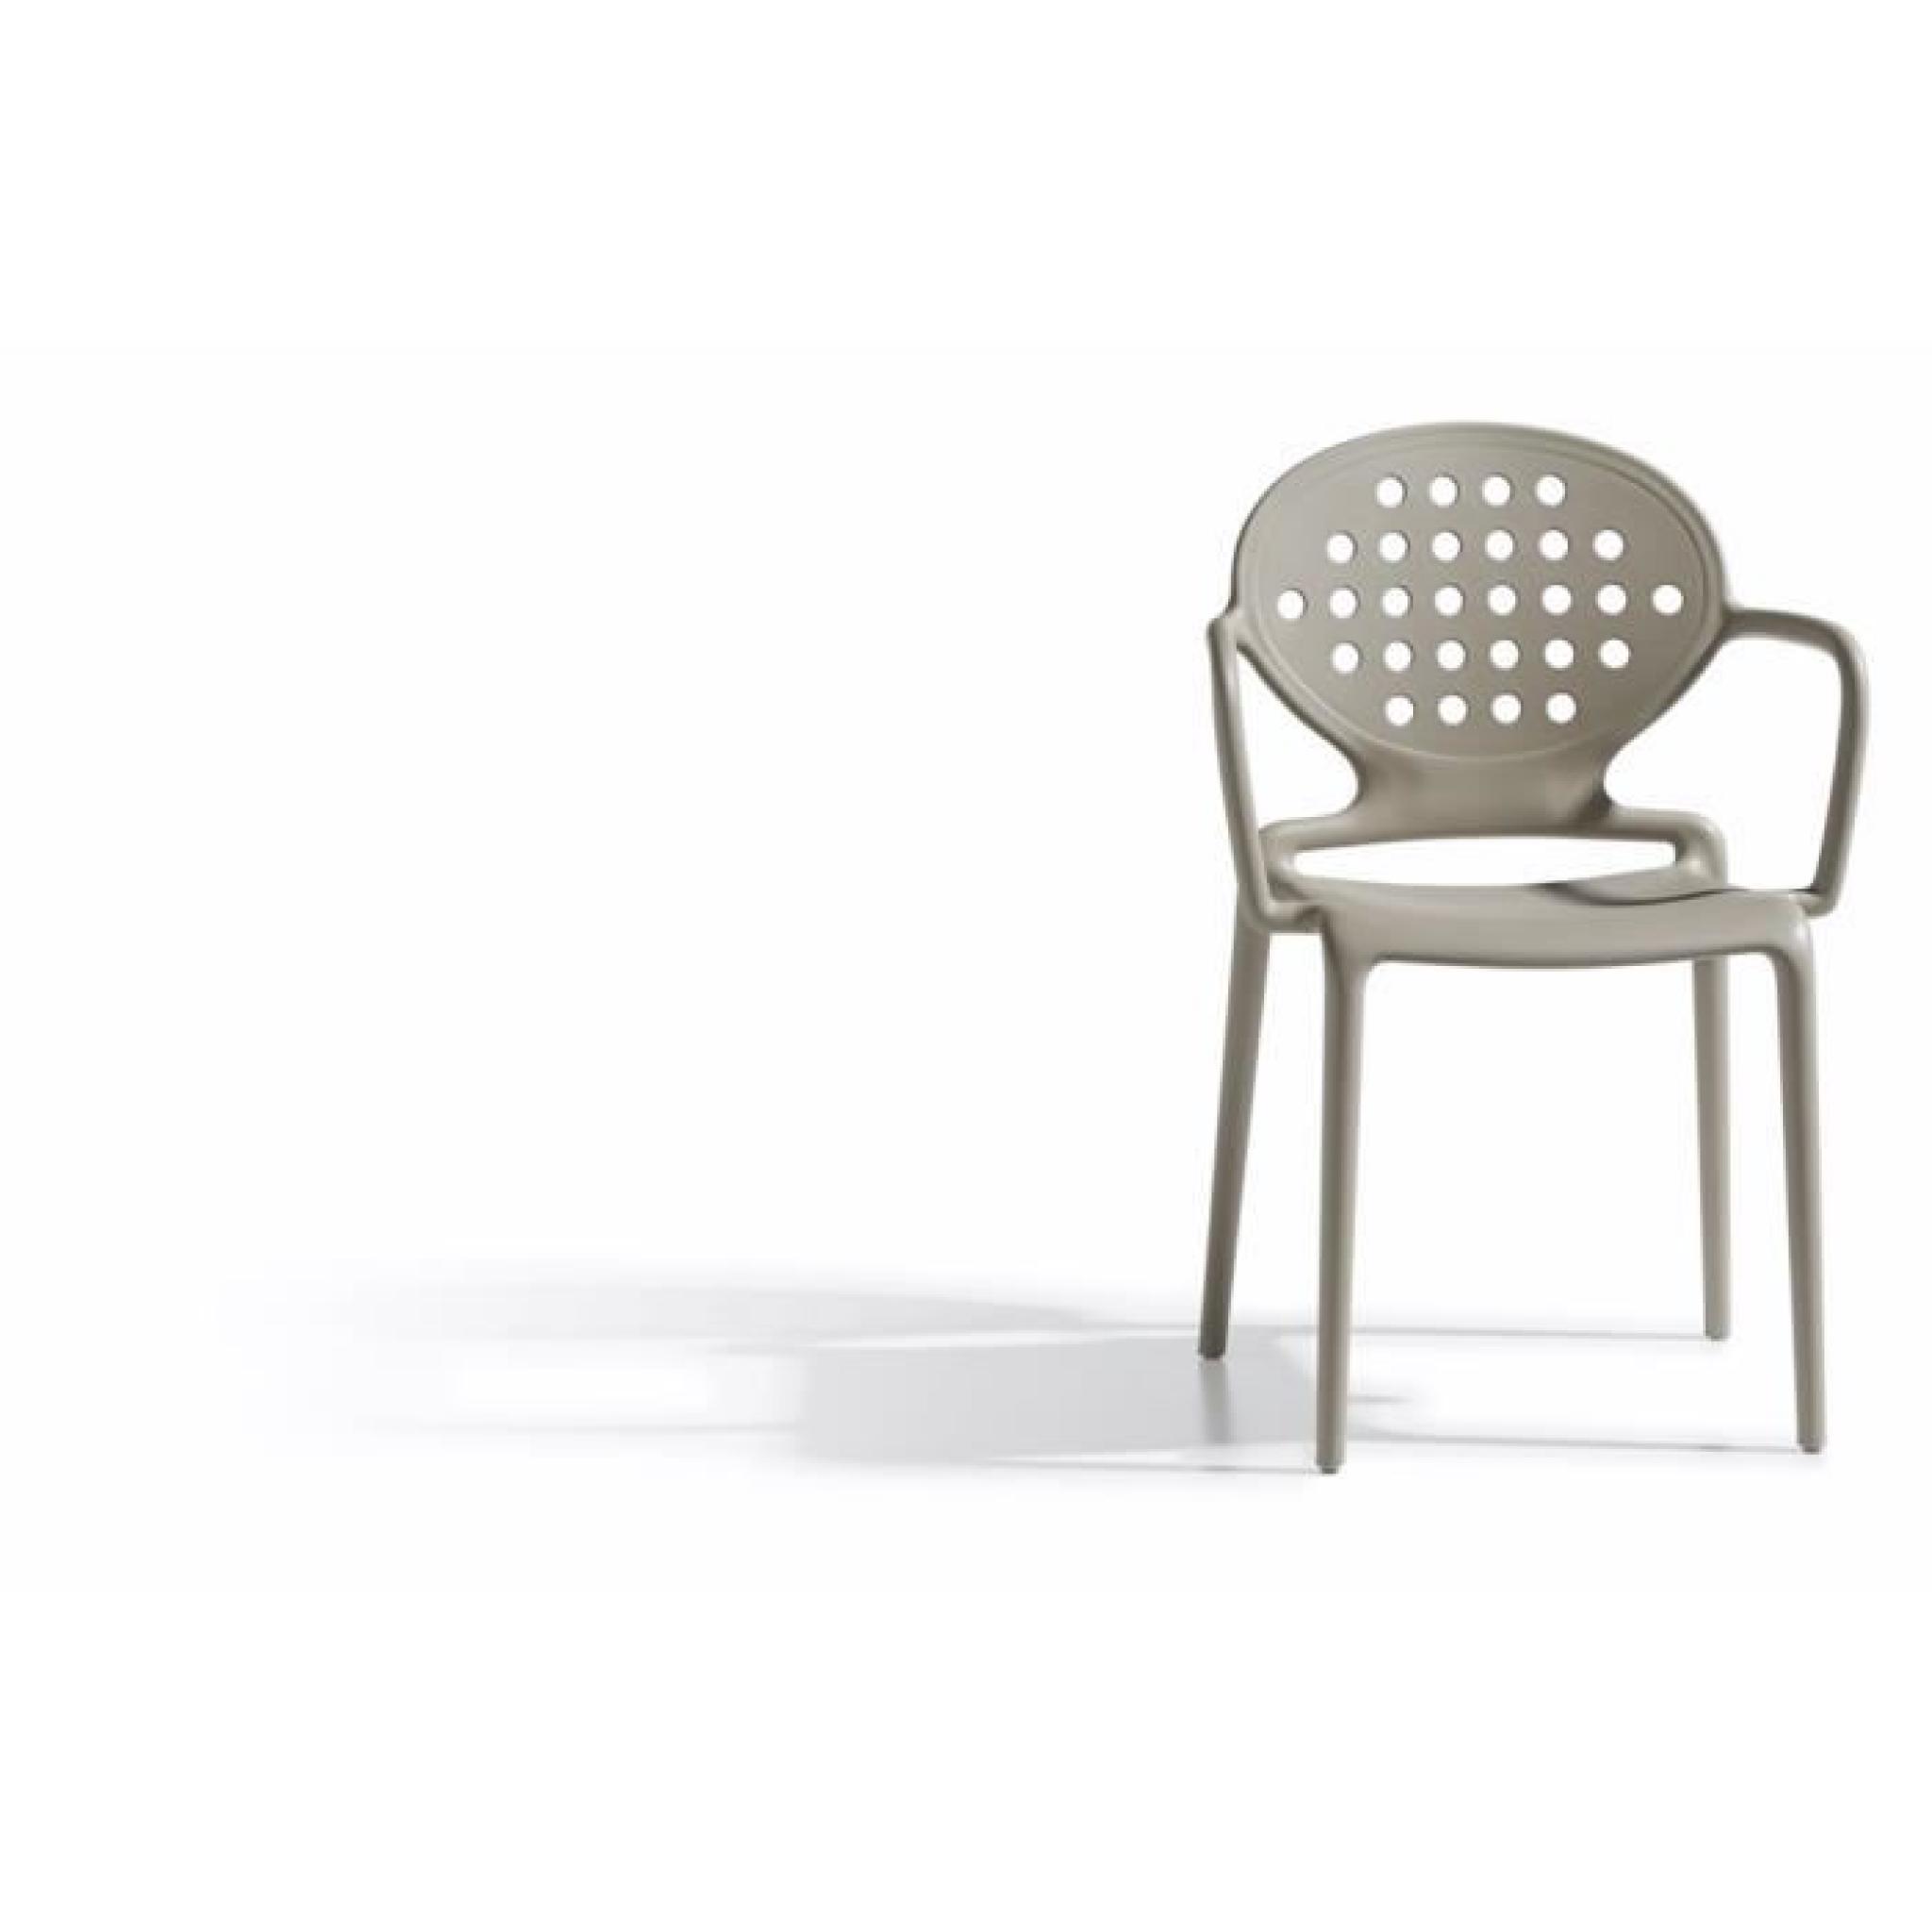 4 Chaises design gris tourterelle avec accoudoi… pas cher